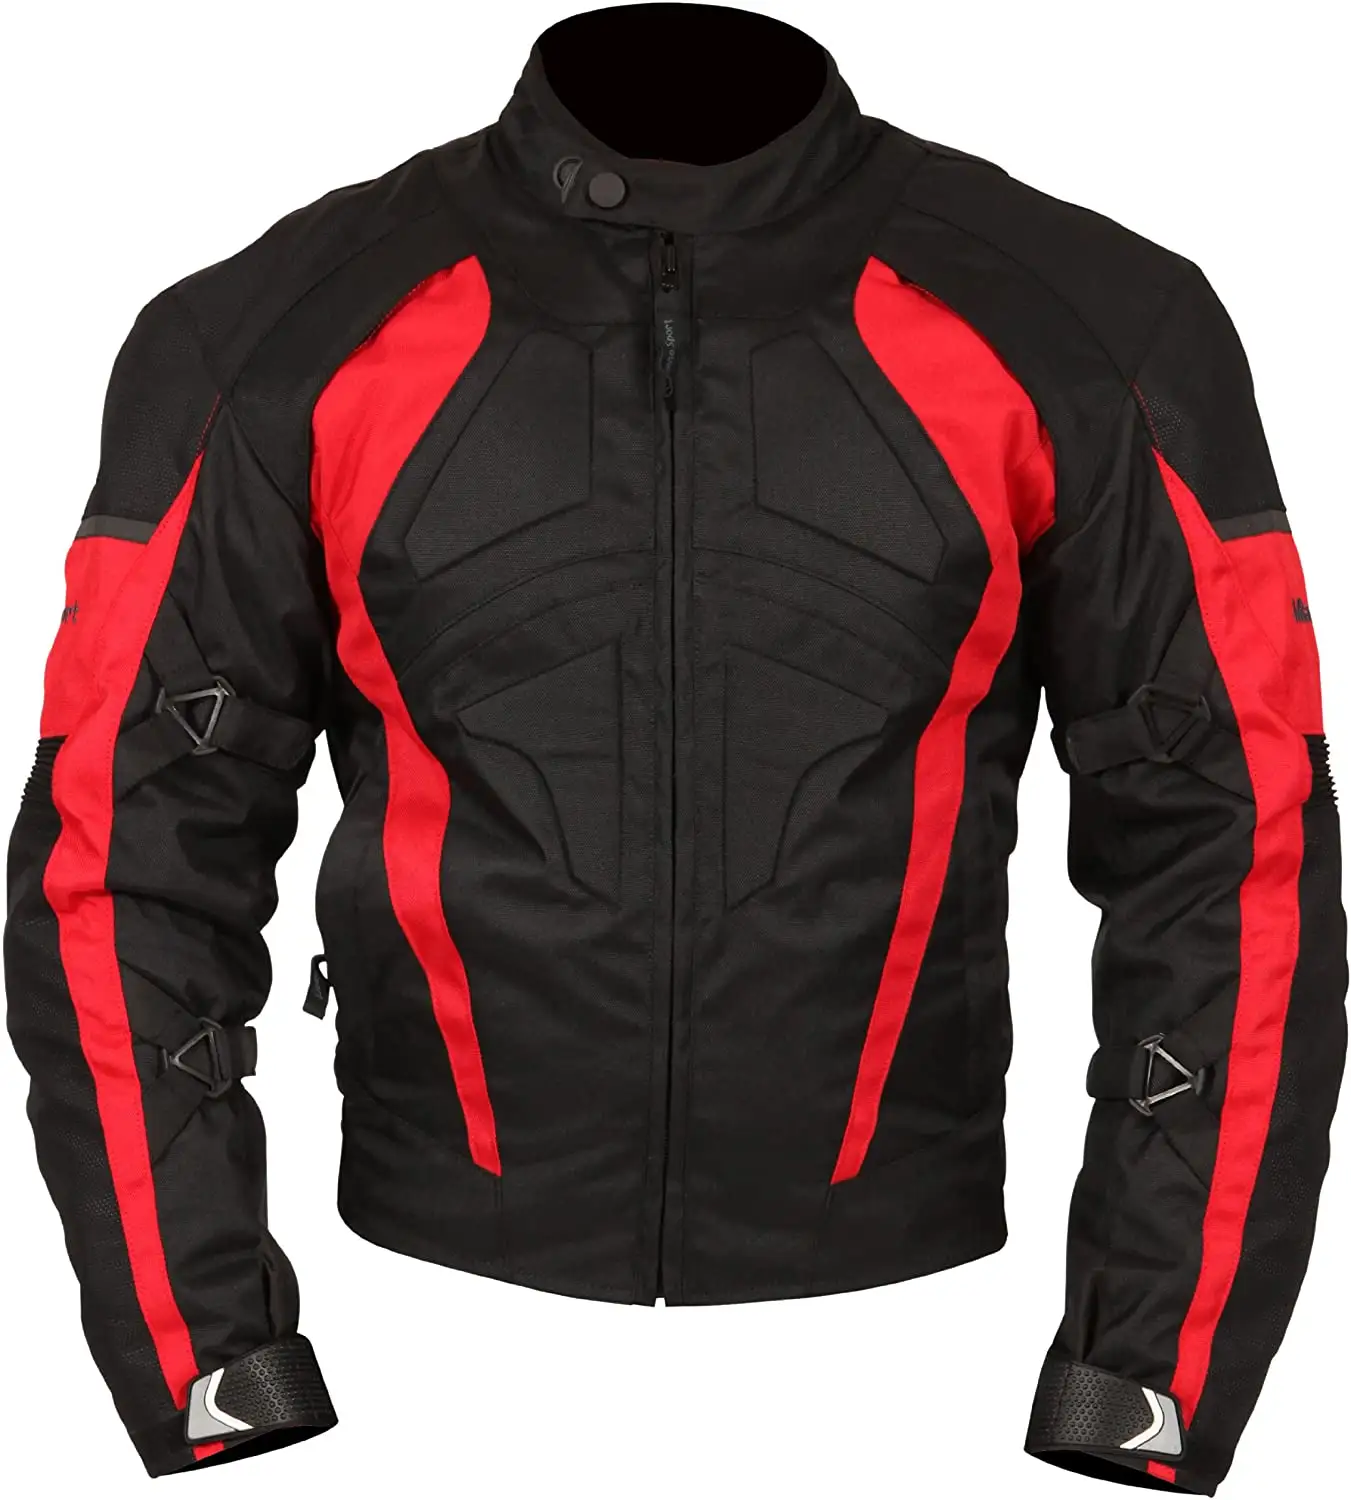 Motosiklet deri ceket tam koruma ile en iyi sürüş motorsiklet ceketleri